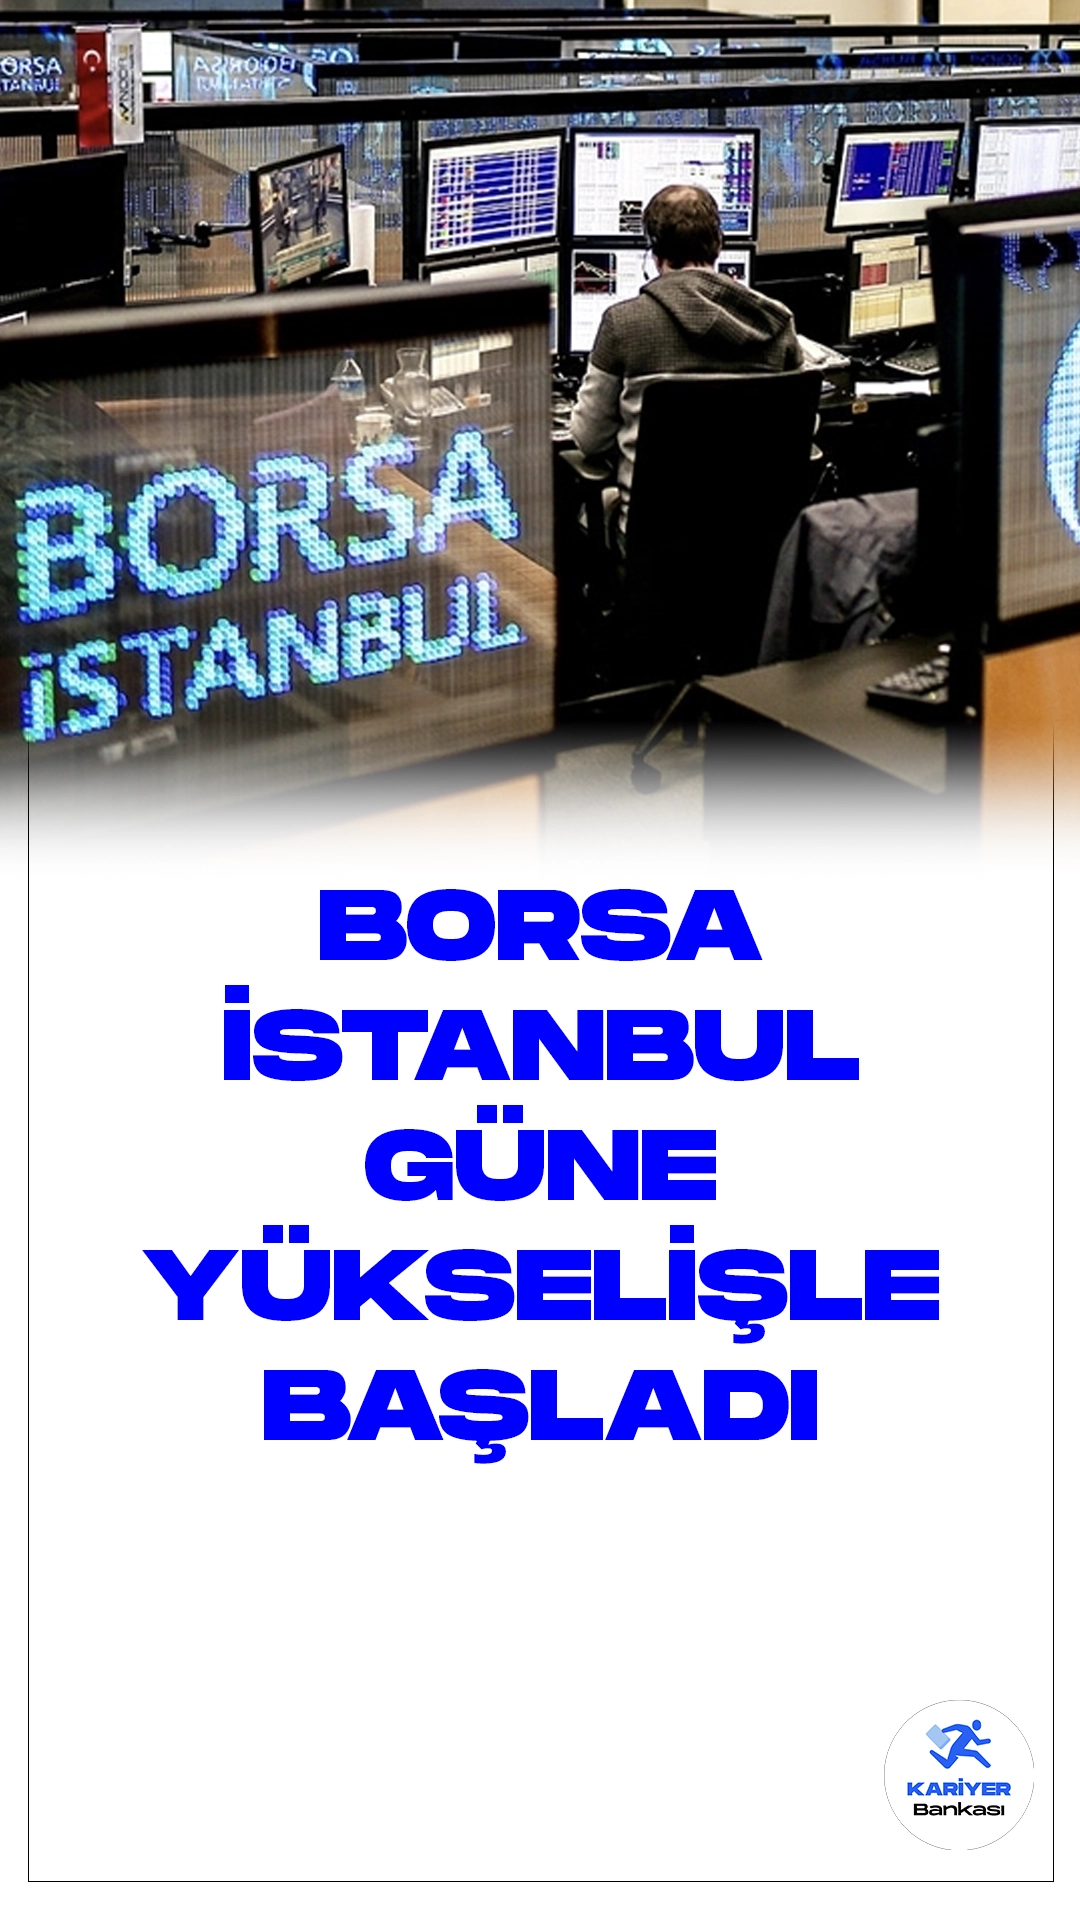 Borsa İstanbul'da BIST 100 Endeksi Güne Yükselişle Başladı.Borsa İstanbul'da BIST 100 endeksi, güne yüzde 0,13'lük bir artışla 7.421,86 puandan başladı. Açılışta BIST 100 endeksi, önceki kapanışa göre 9,83 puan ve yüzde 0,13 değer kazanarak 7.421,86 puana çıktı.